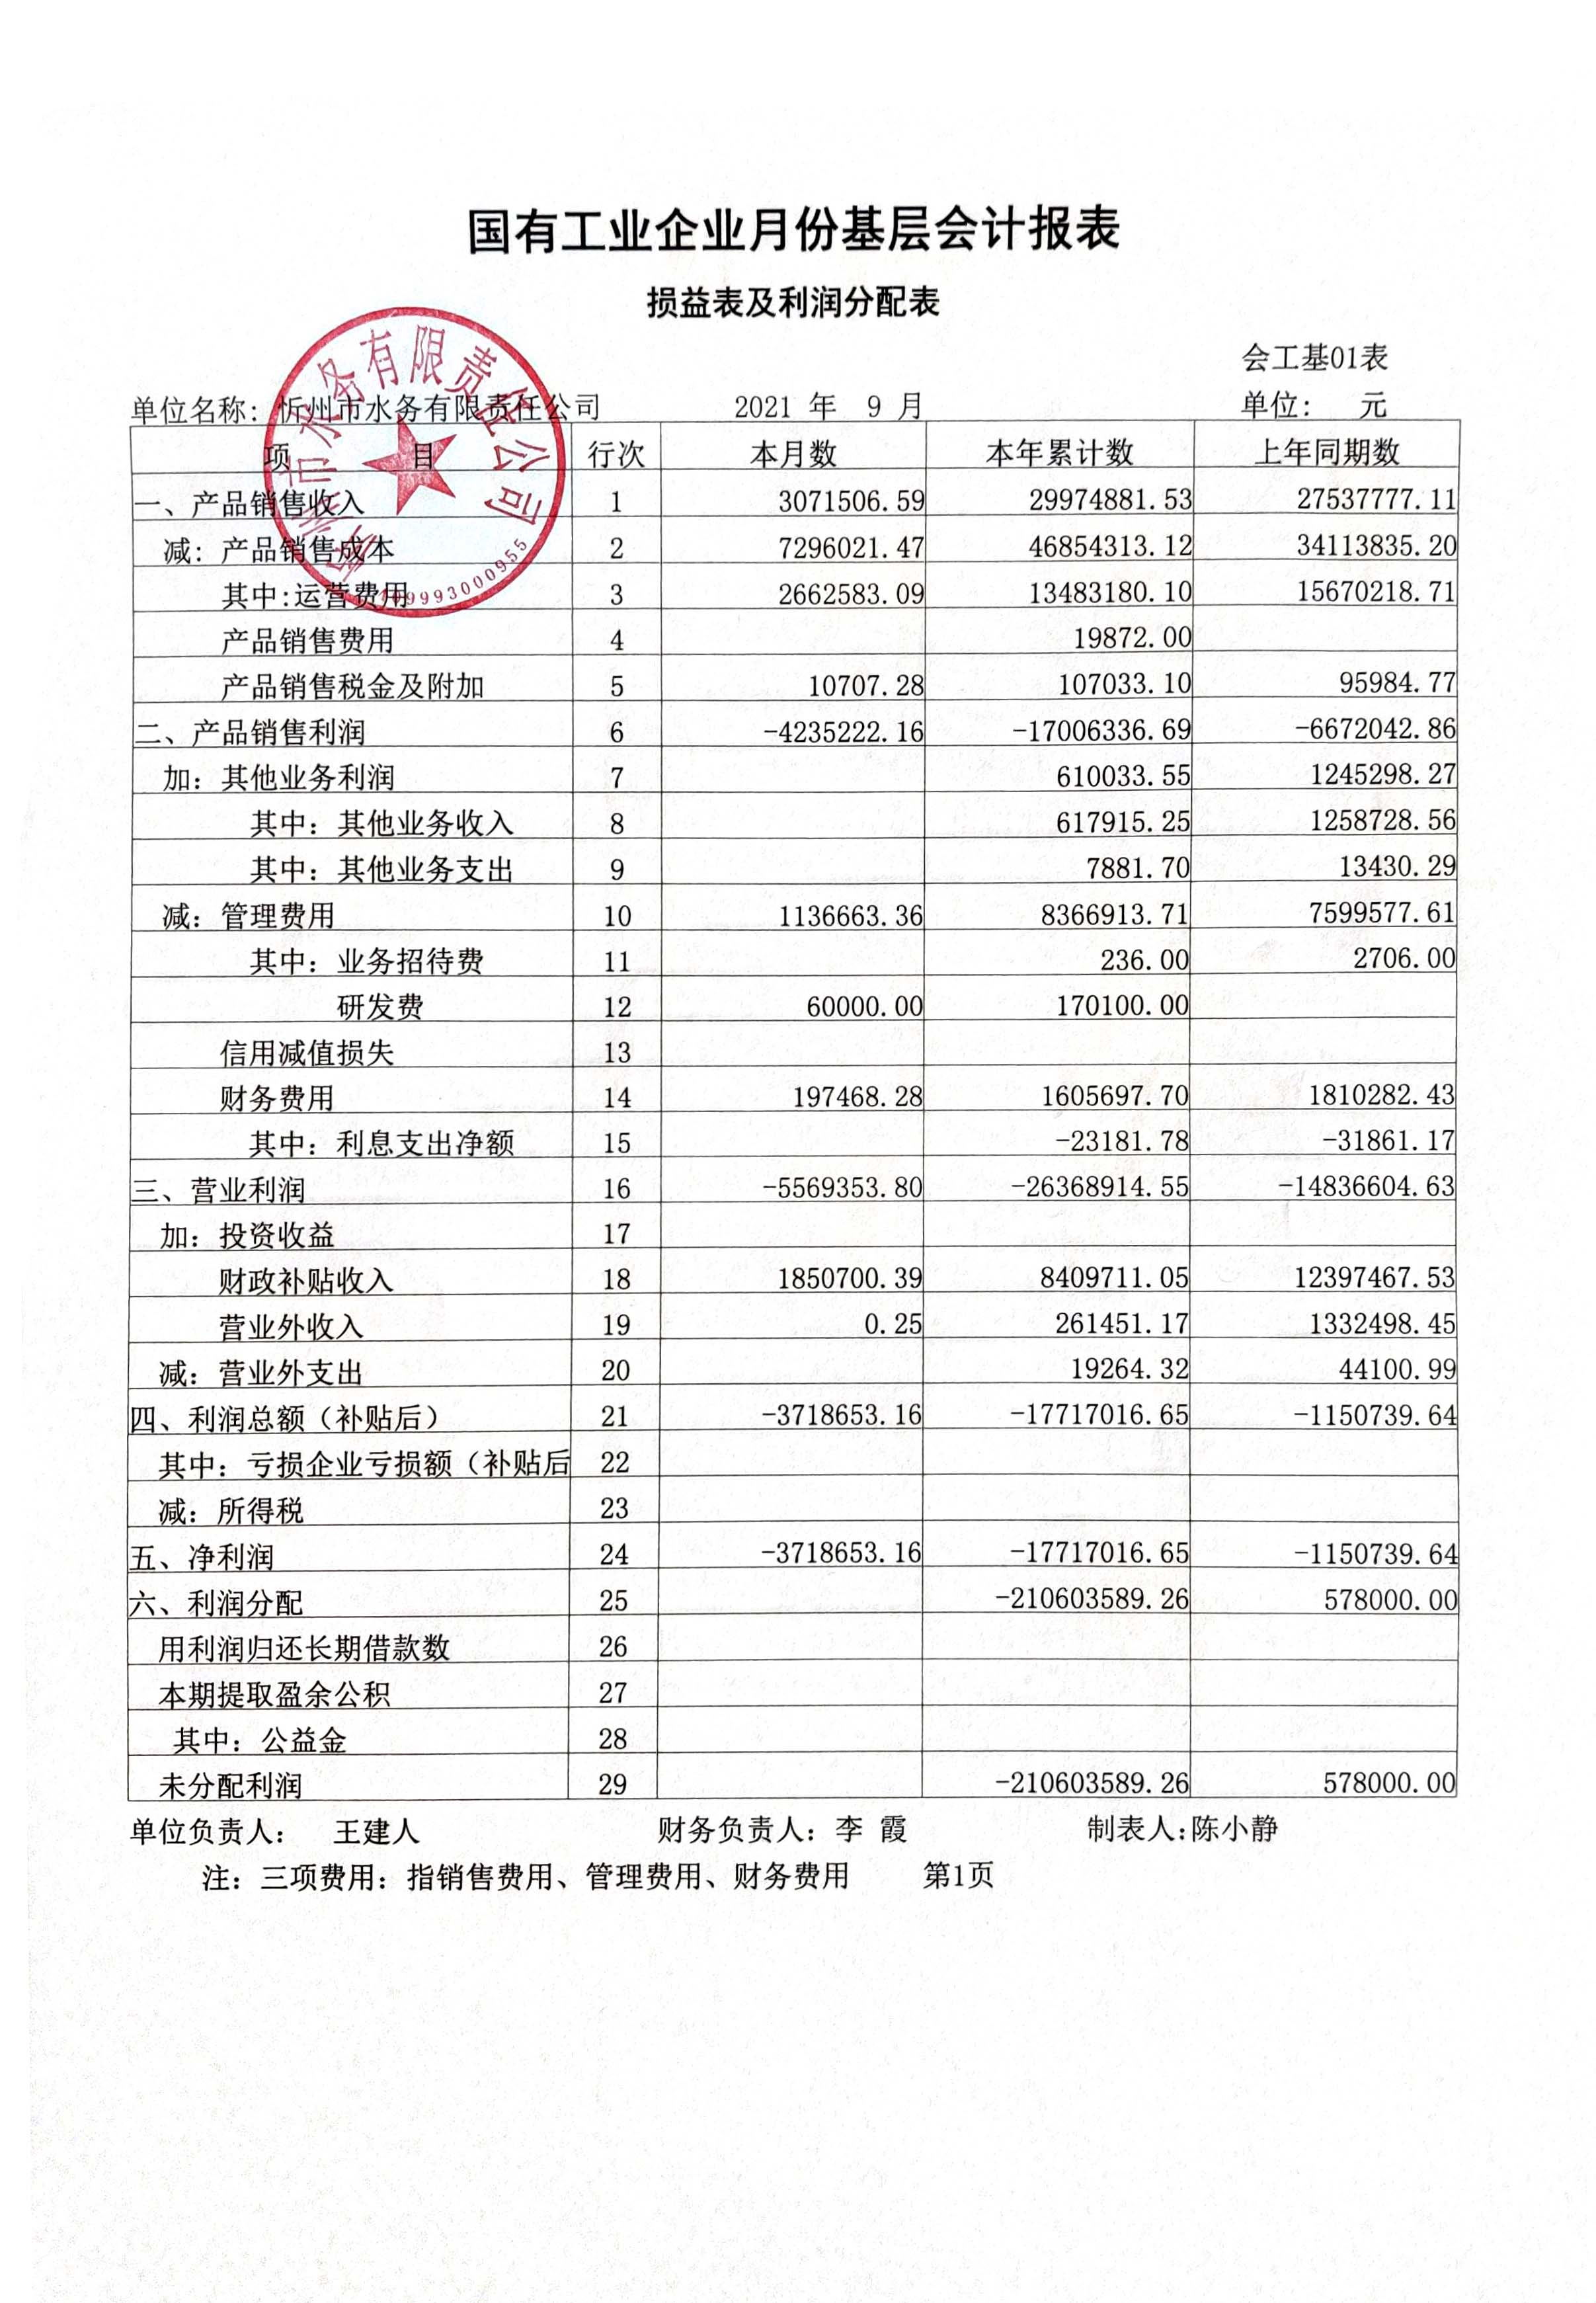 忻州市水務有限責任公司 2021年第三季度財務報表公示.jpg